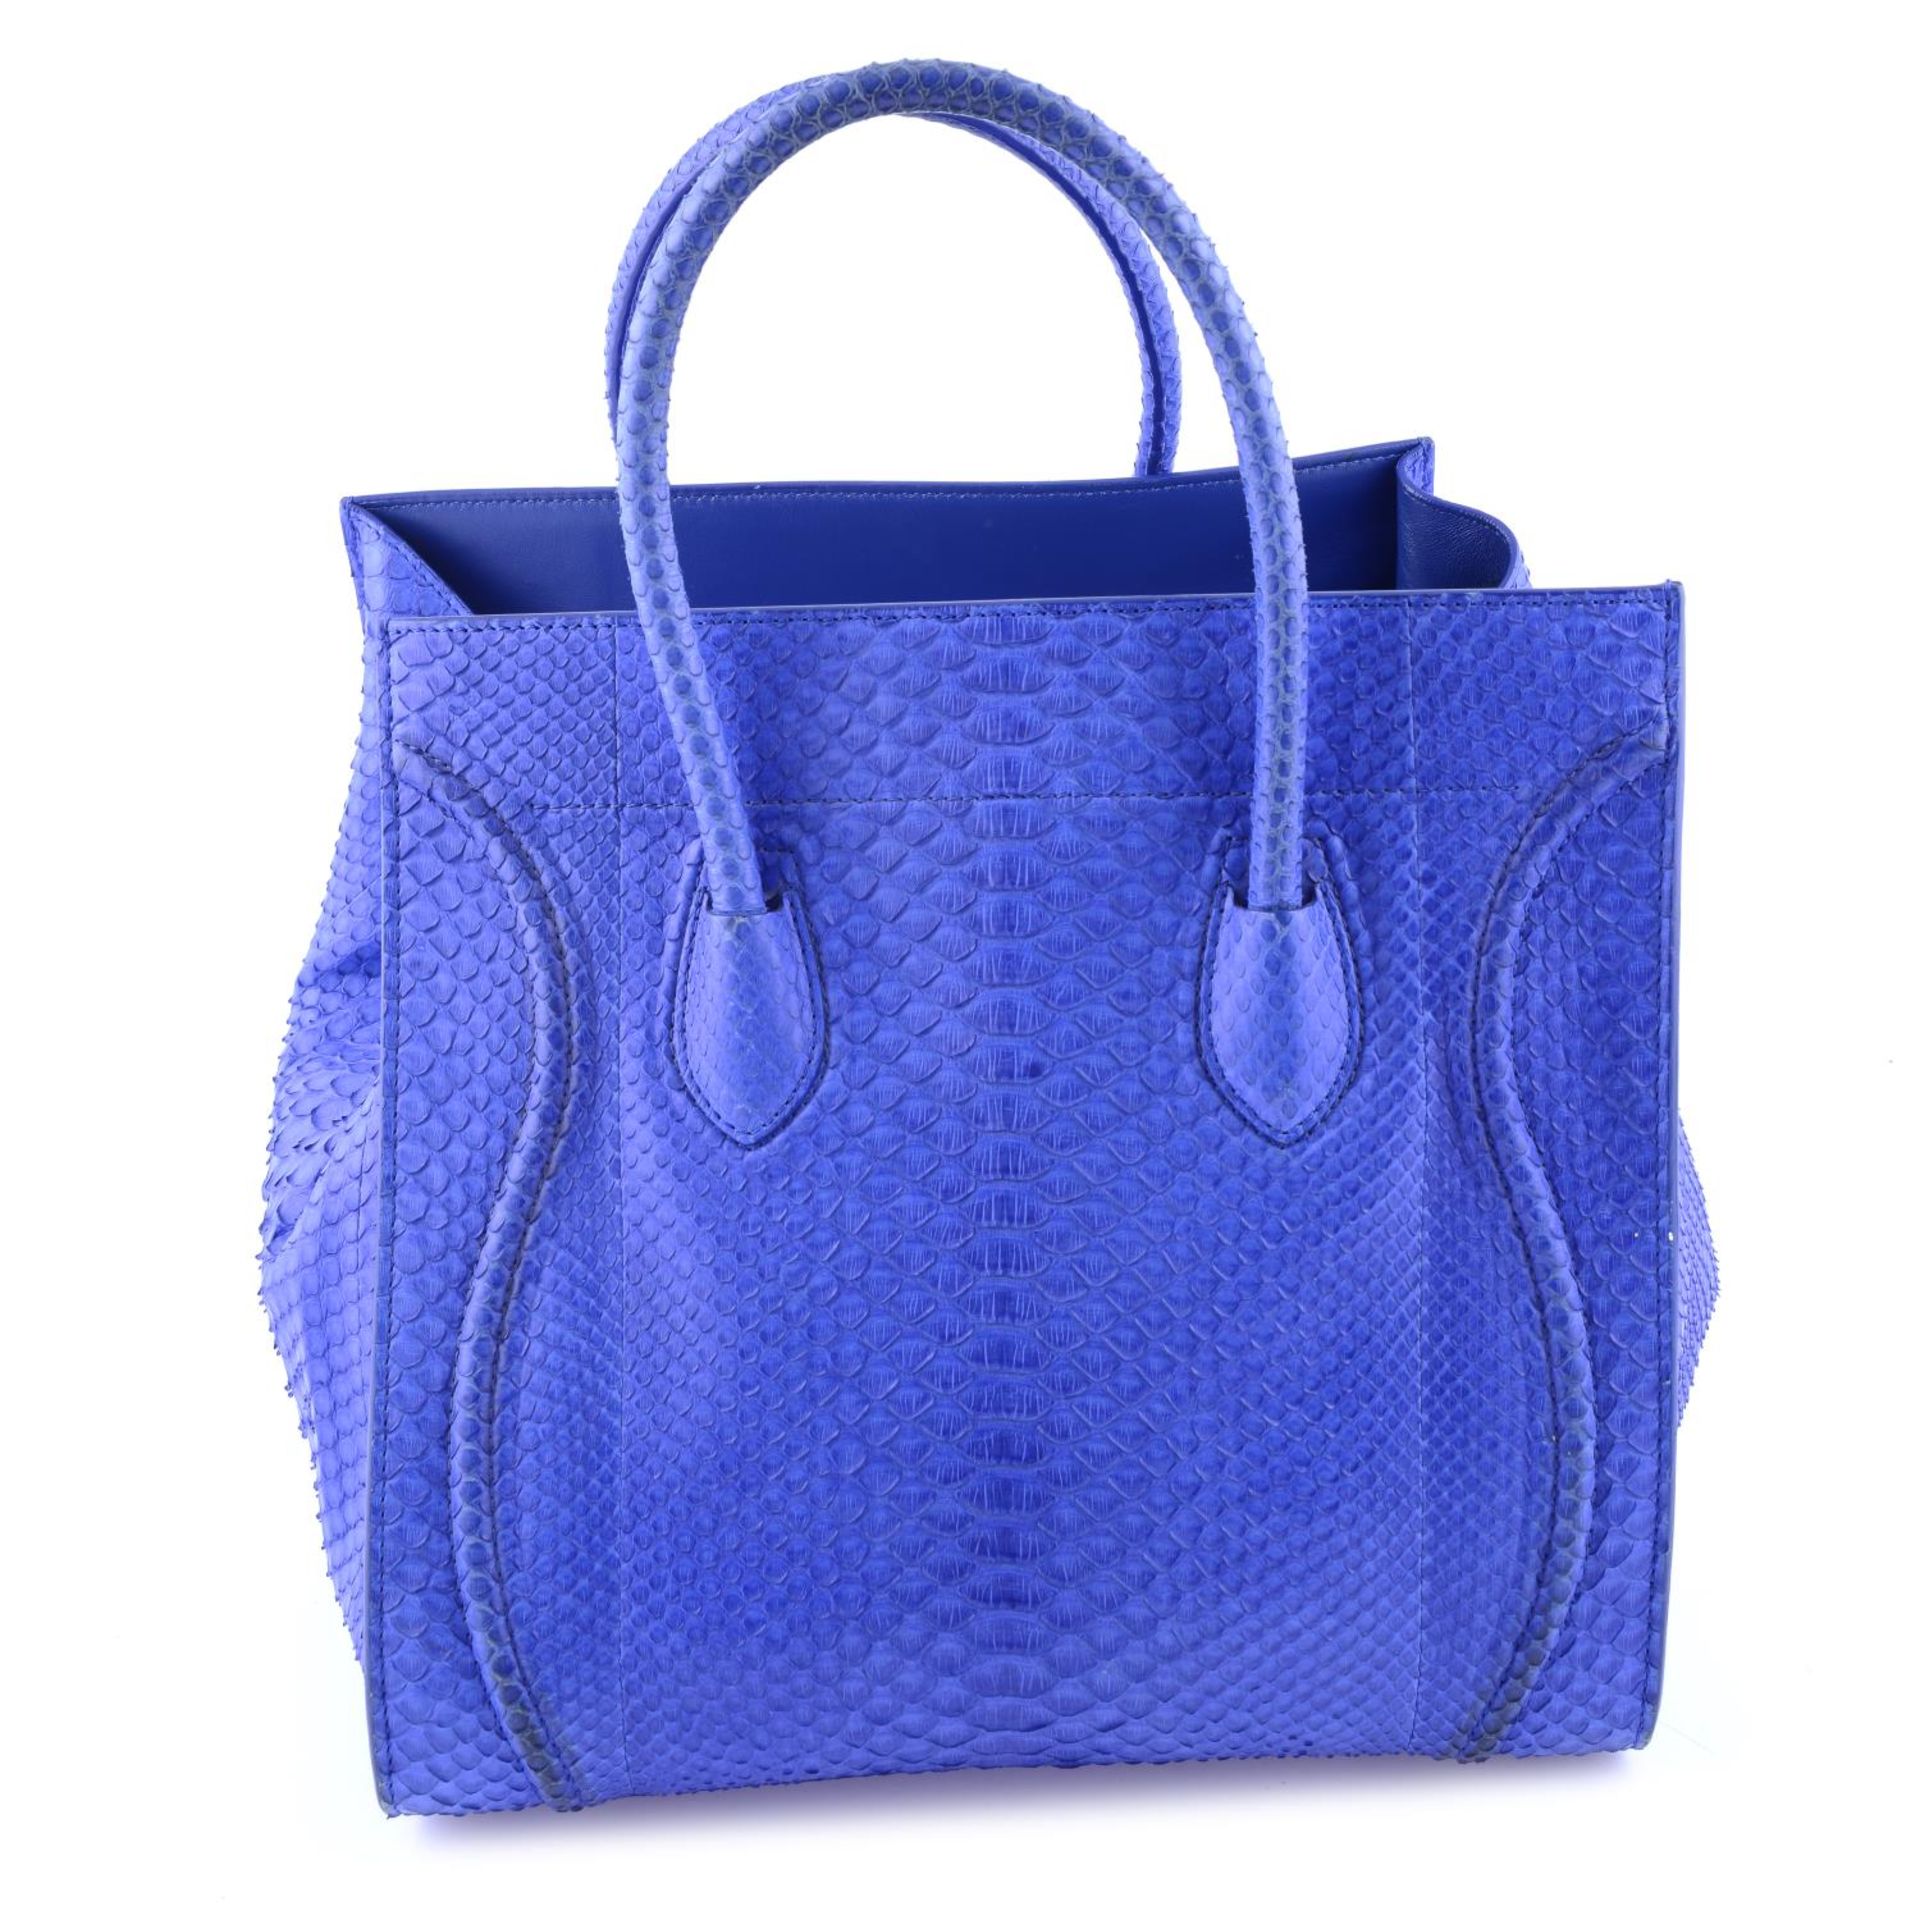 CÉLINE - a blue python skin Phantom handbag. - Image 2 of 9